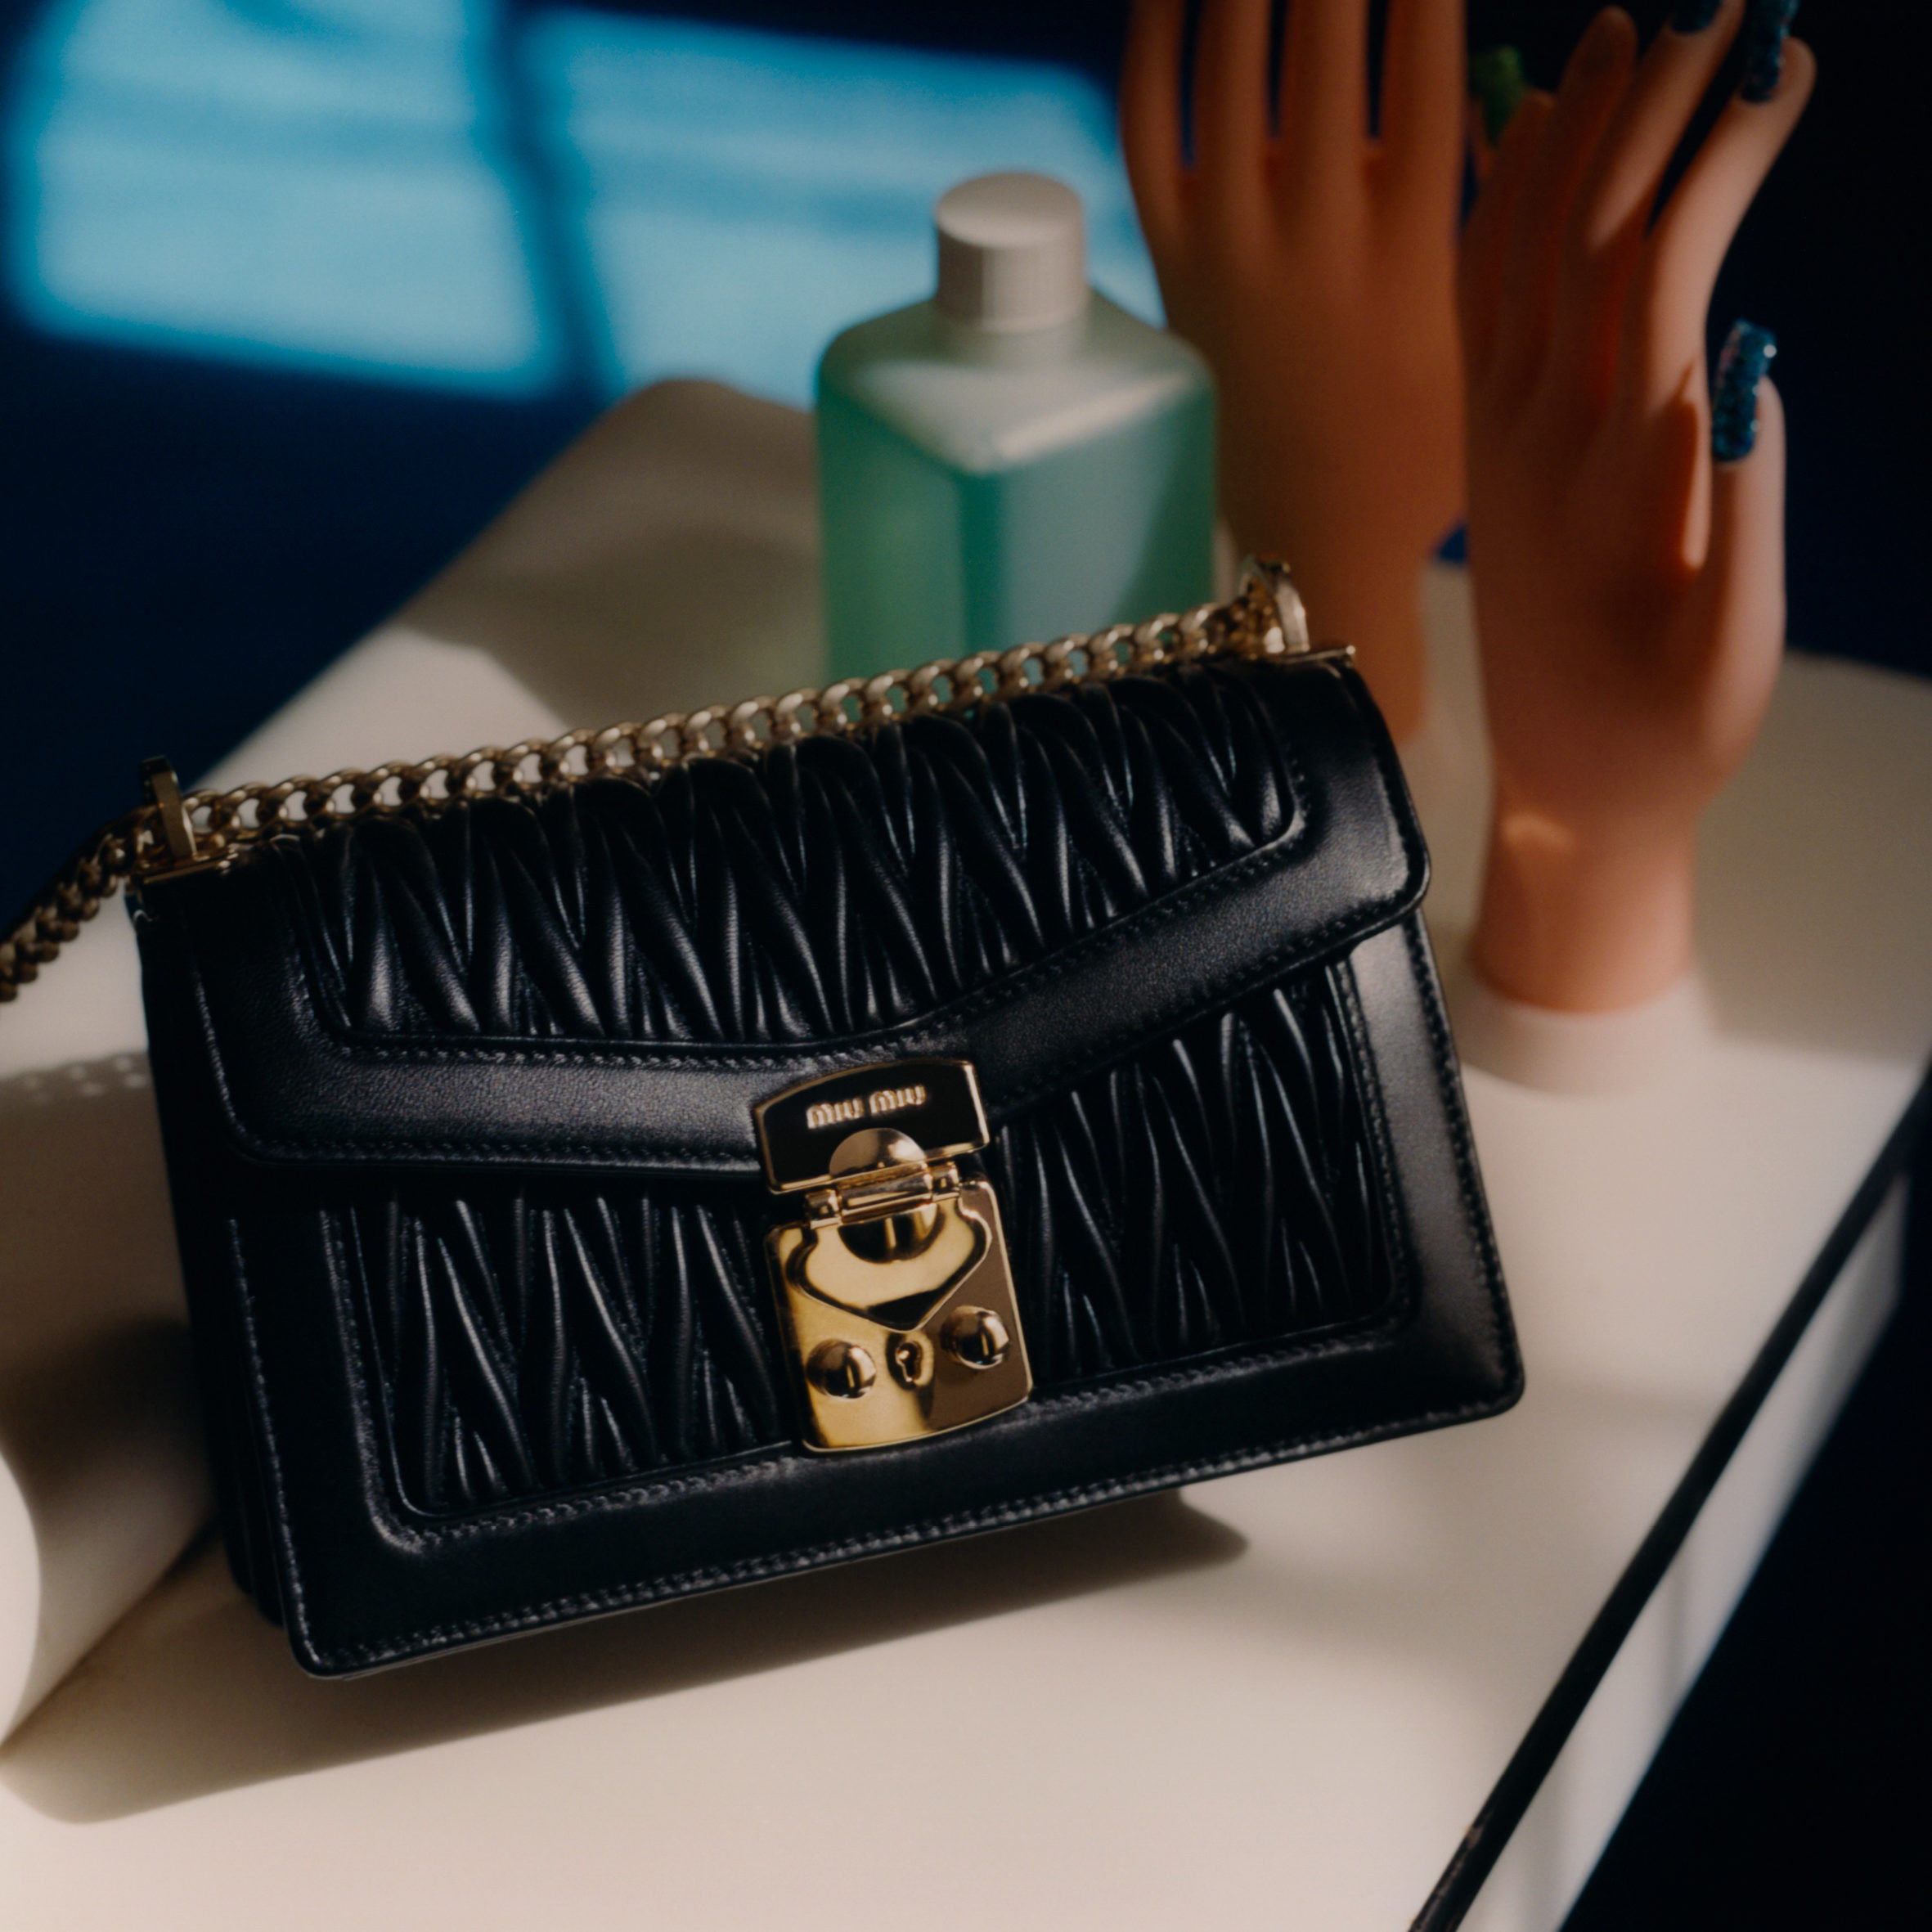 Miu Miu's new Miu Confidential handbag proves that 'Bags Don't Lie